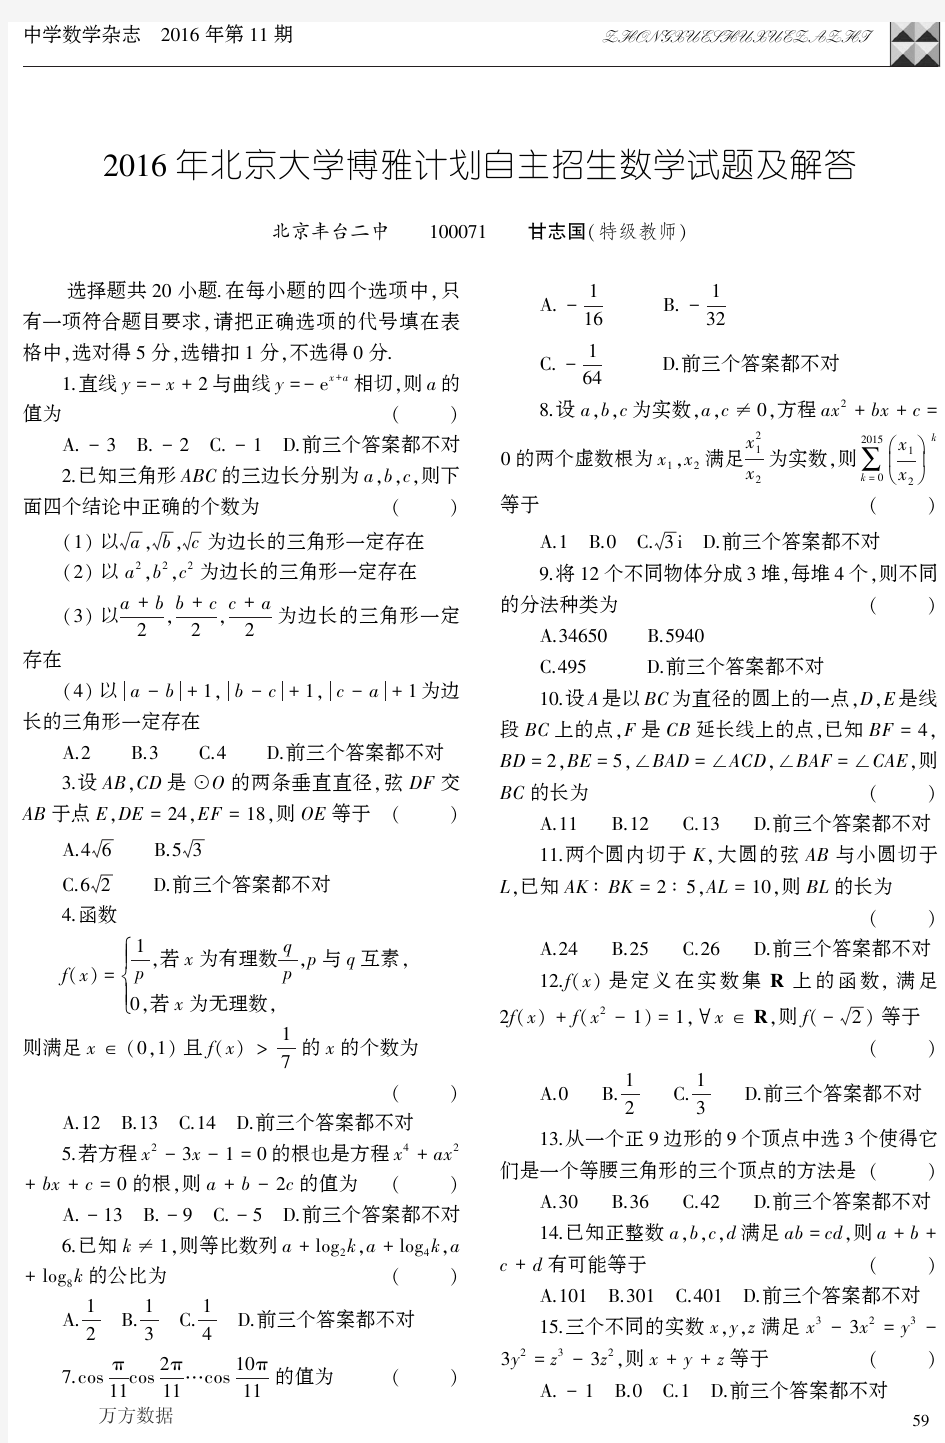 2016年北京大学博雅计划自主招生数学试题及解答